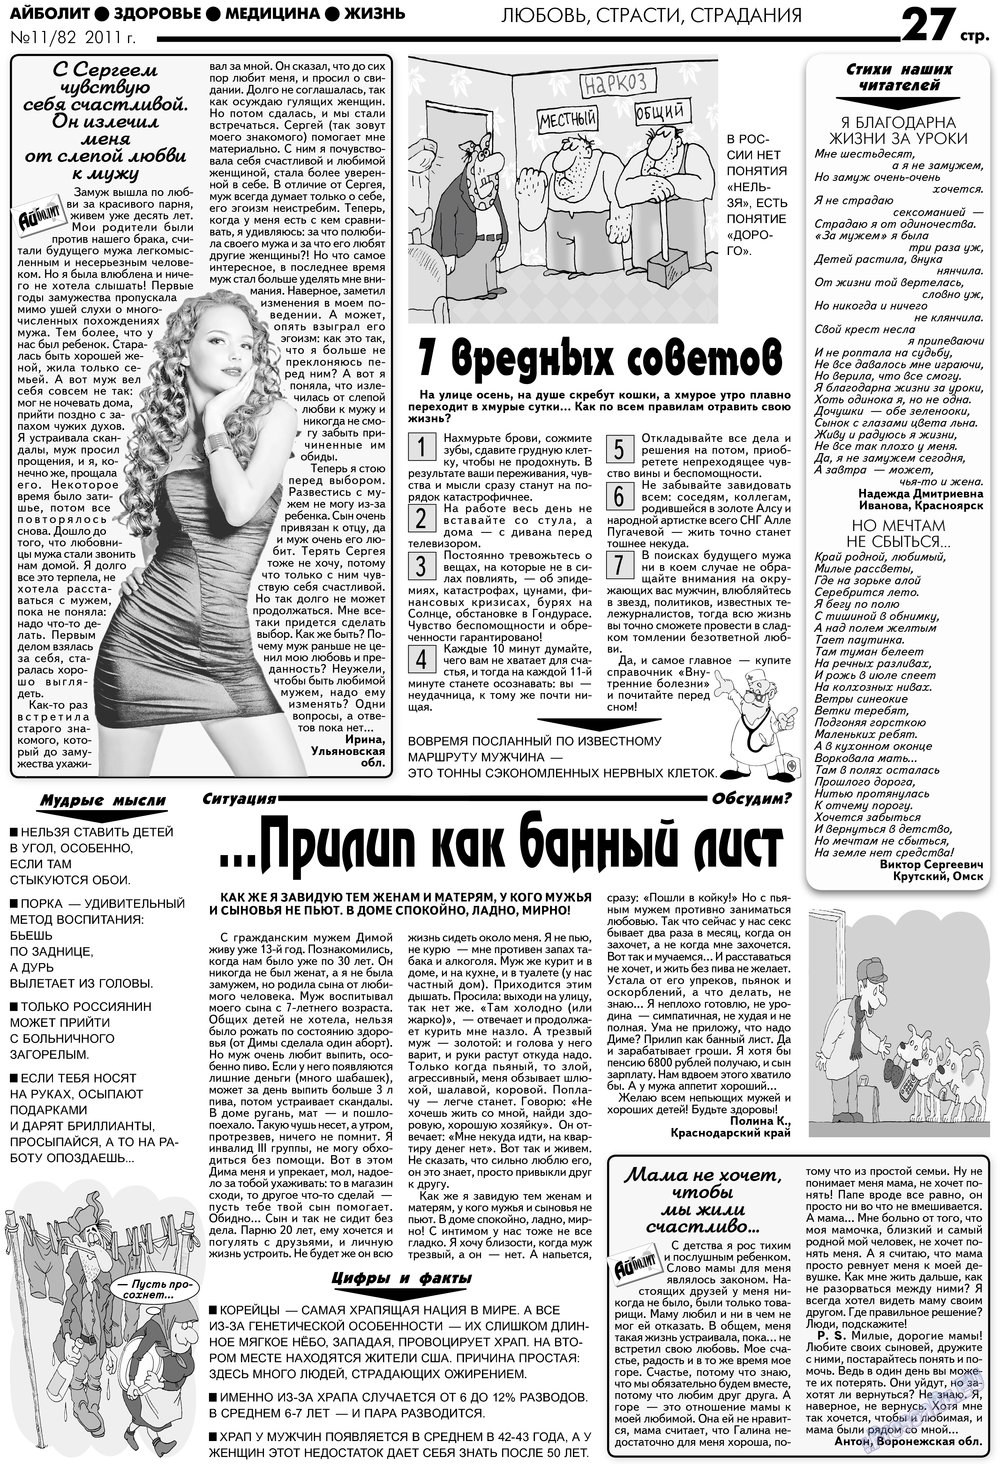 АйБолит, газета. 2012 №11 стр.27